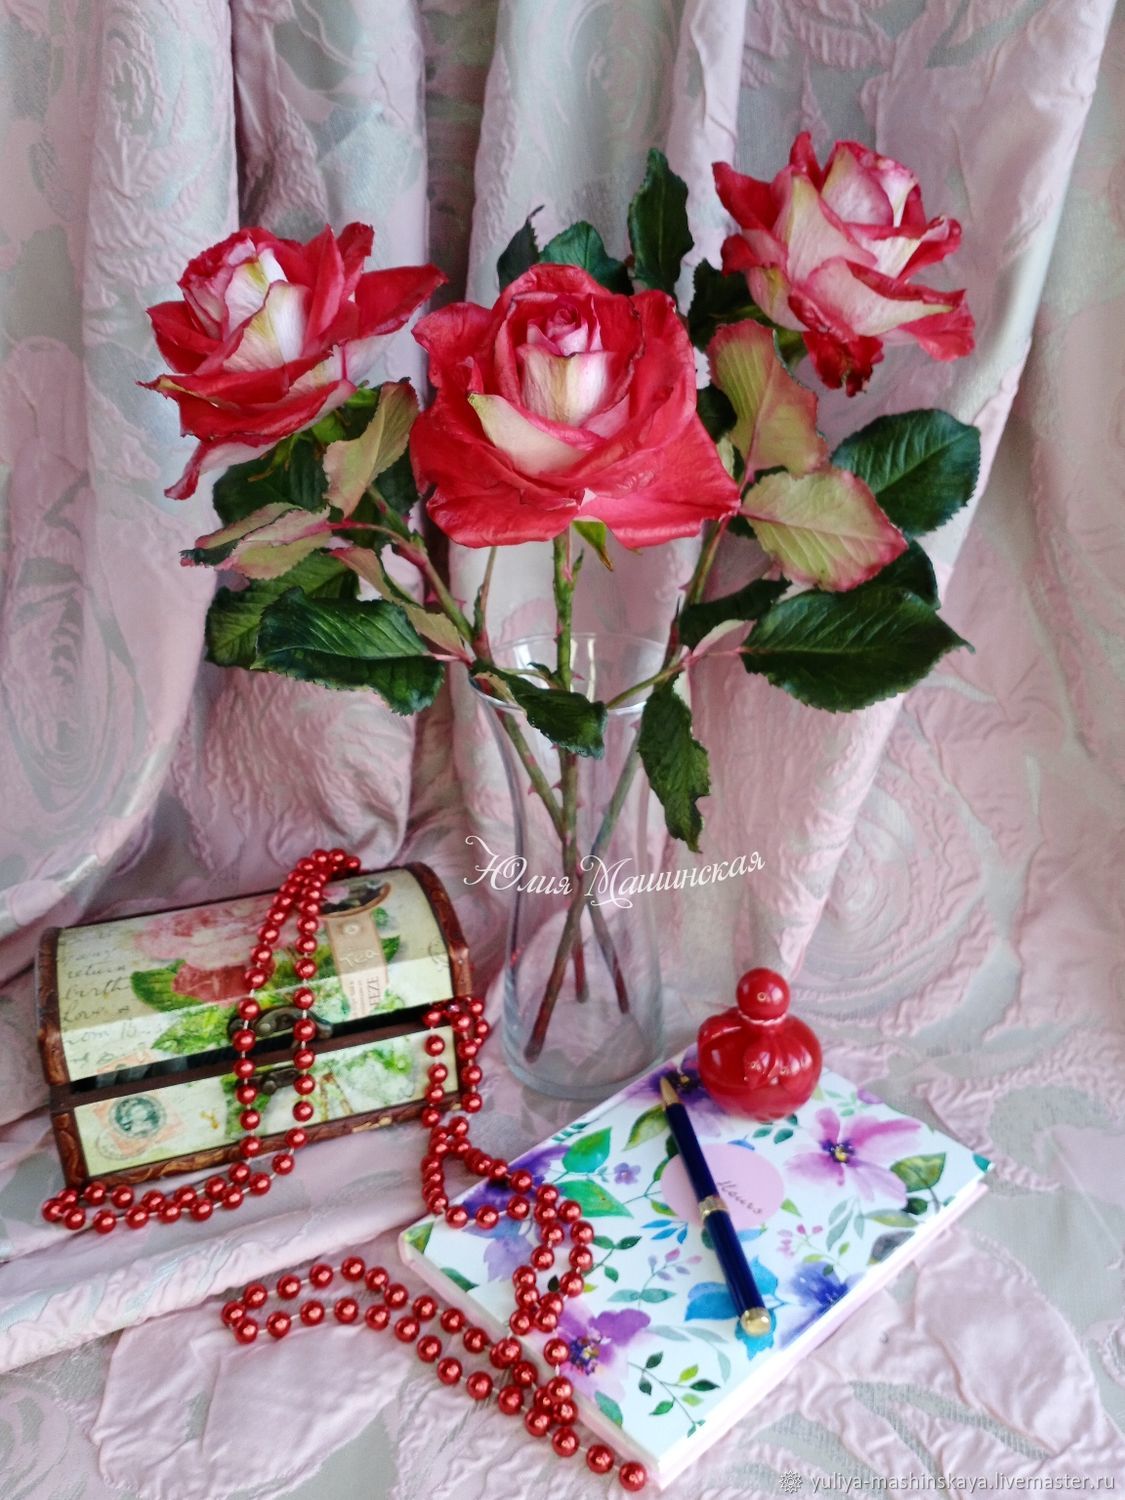 Крупные красно- белые розы "Осирия" в интернет-магазине Ярмарка Мастеров по цене 3300 ₽ – Q29OYRU